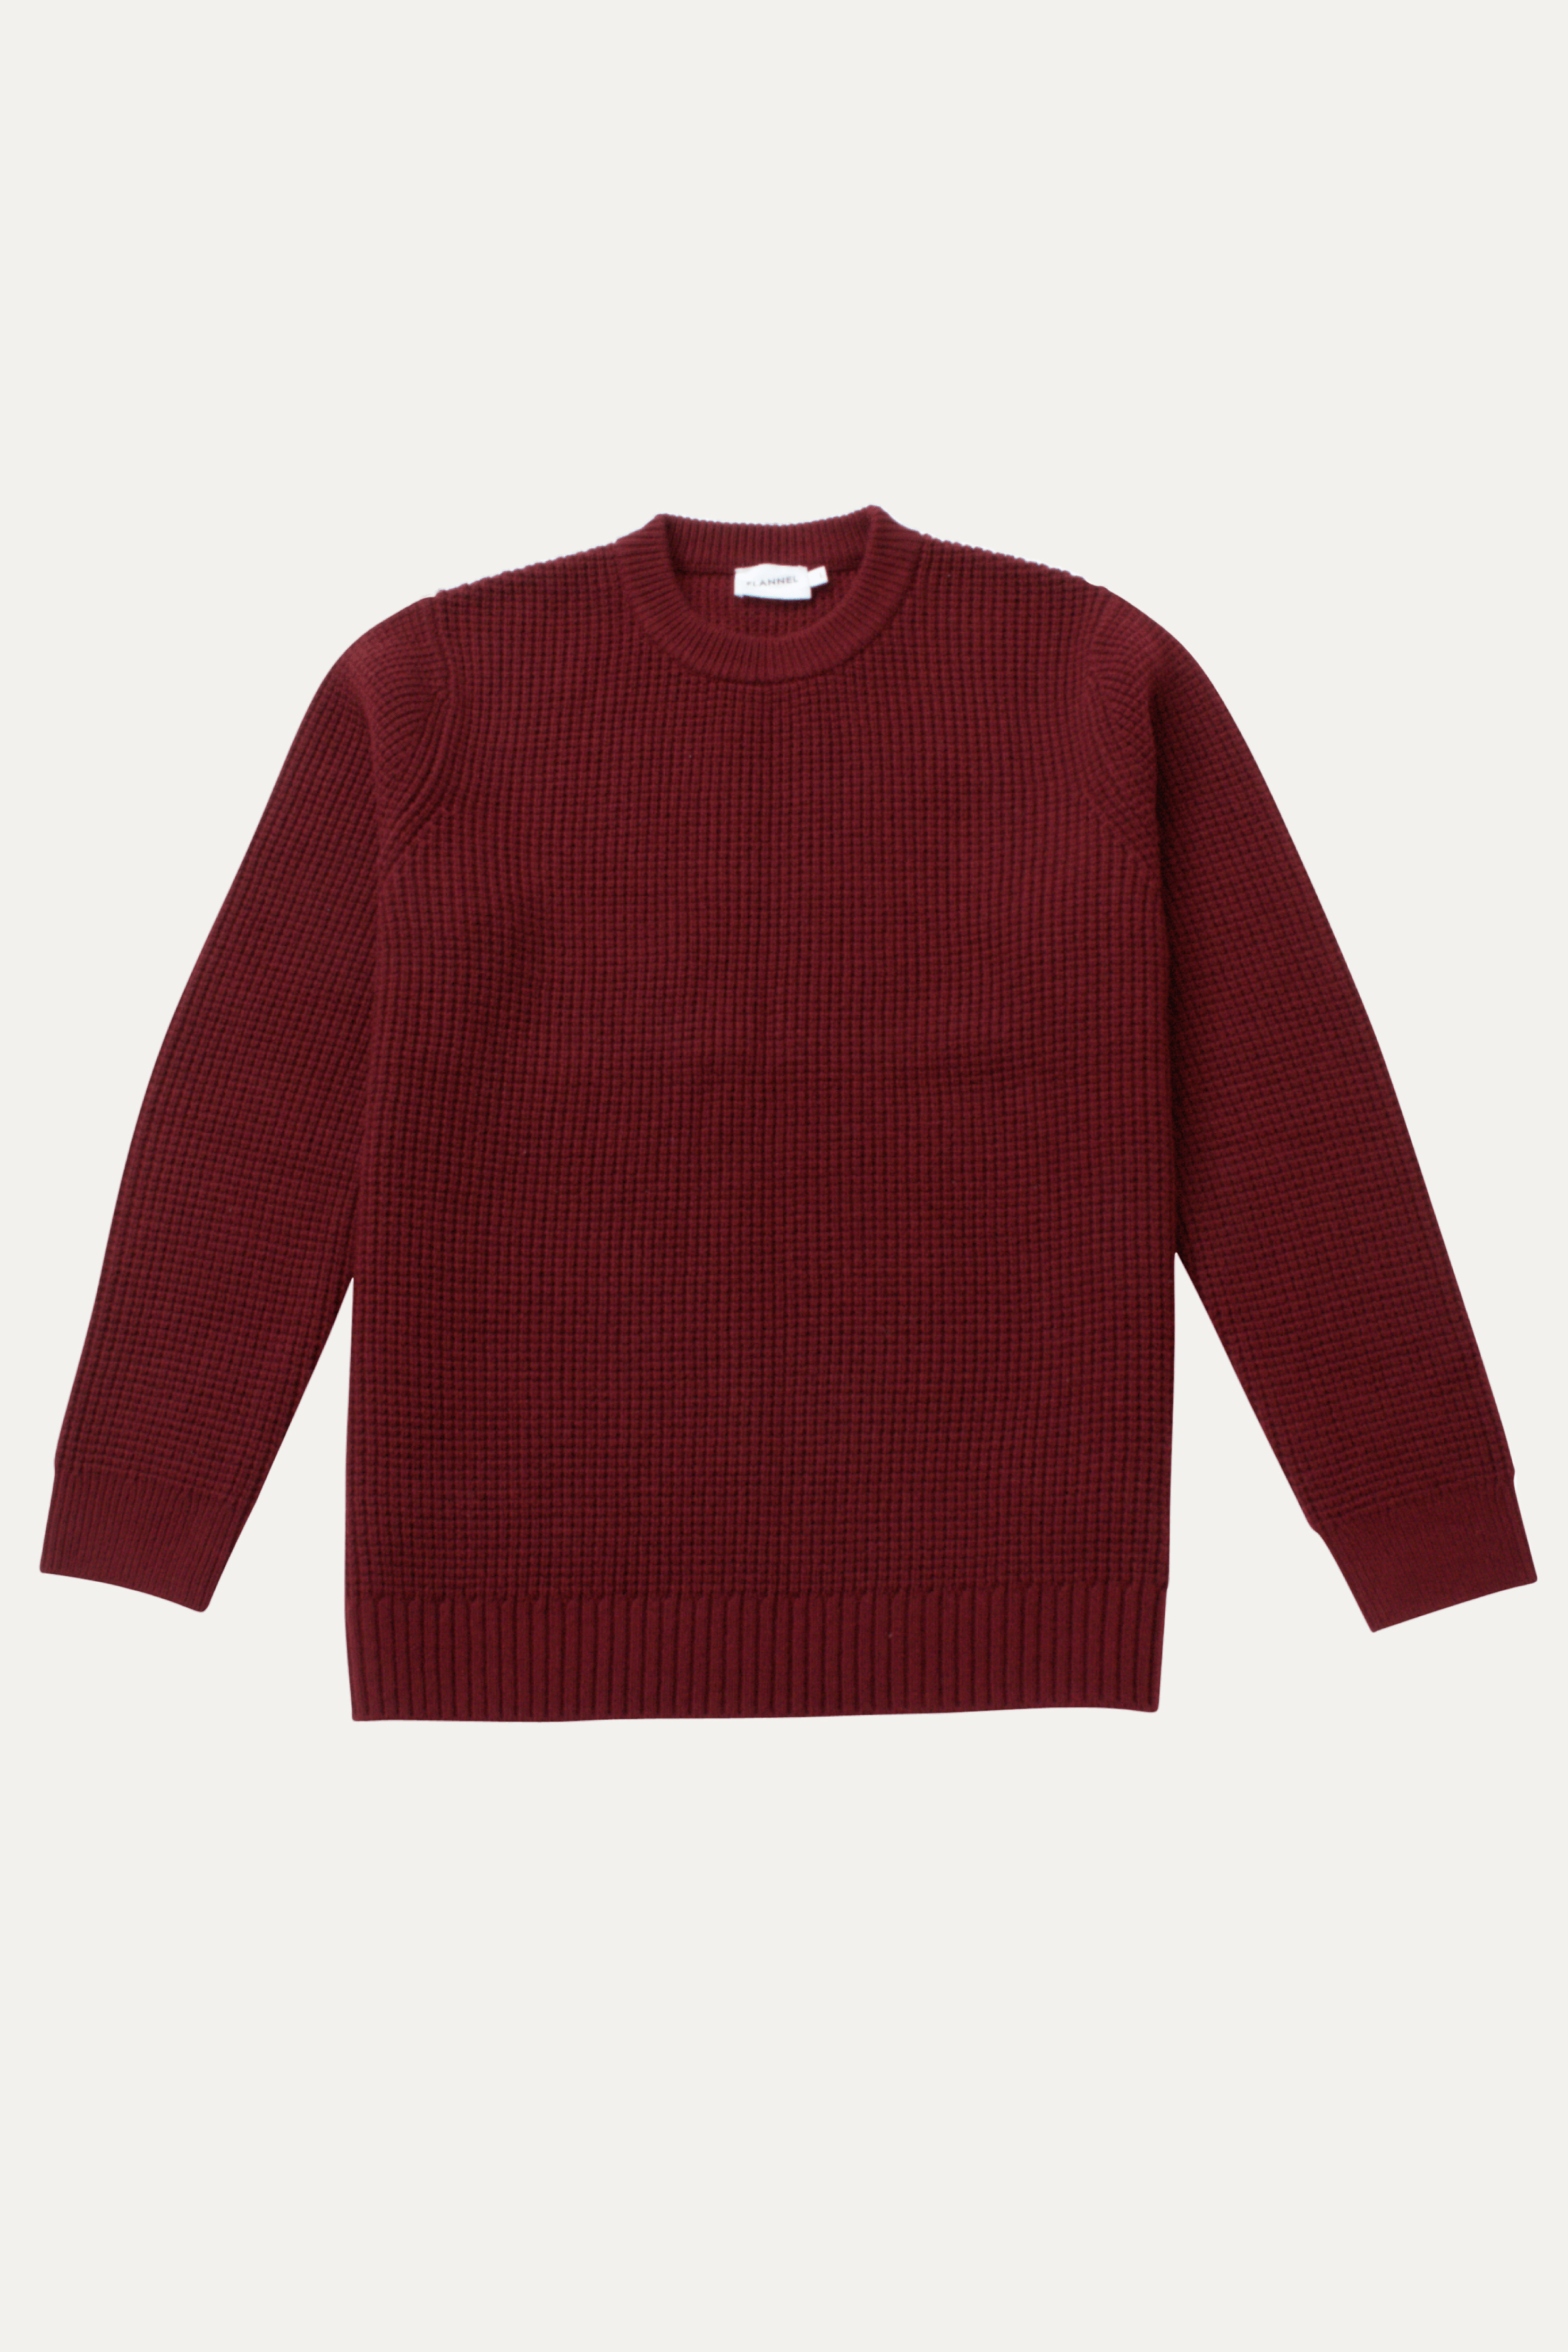 Eamonn Sweater